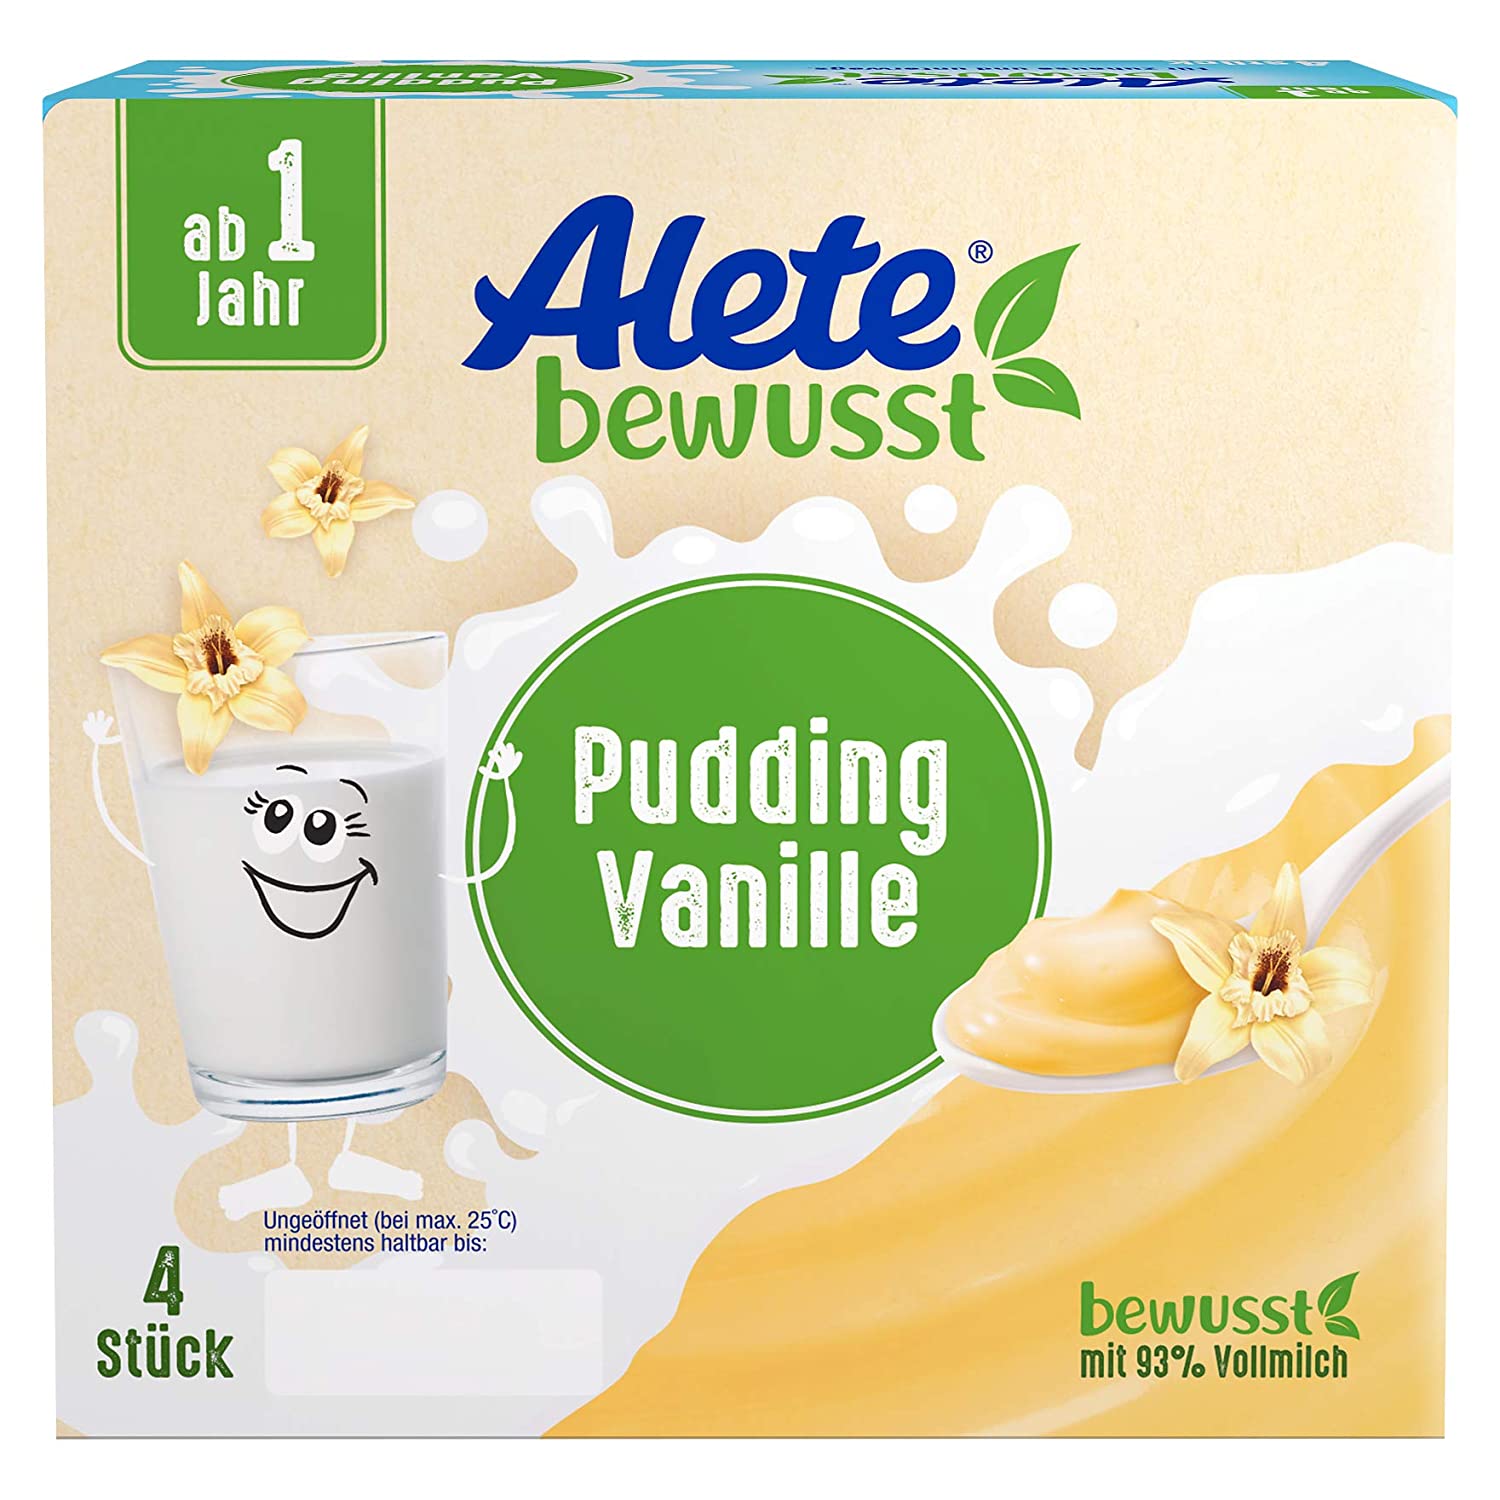 Alete bewusst Pudding Vanille, ab 1 Jahr, leckeres Dessert wie selbst gekocht, süßer Snack mit Vanille-Aroma für Babys, ideal für zu Hause & unterwegs, 400 g (4 x 100 g)